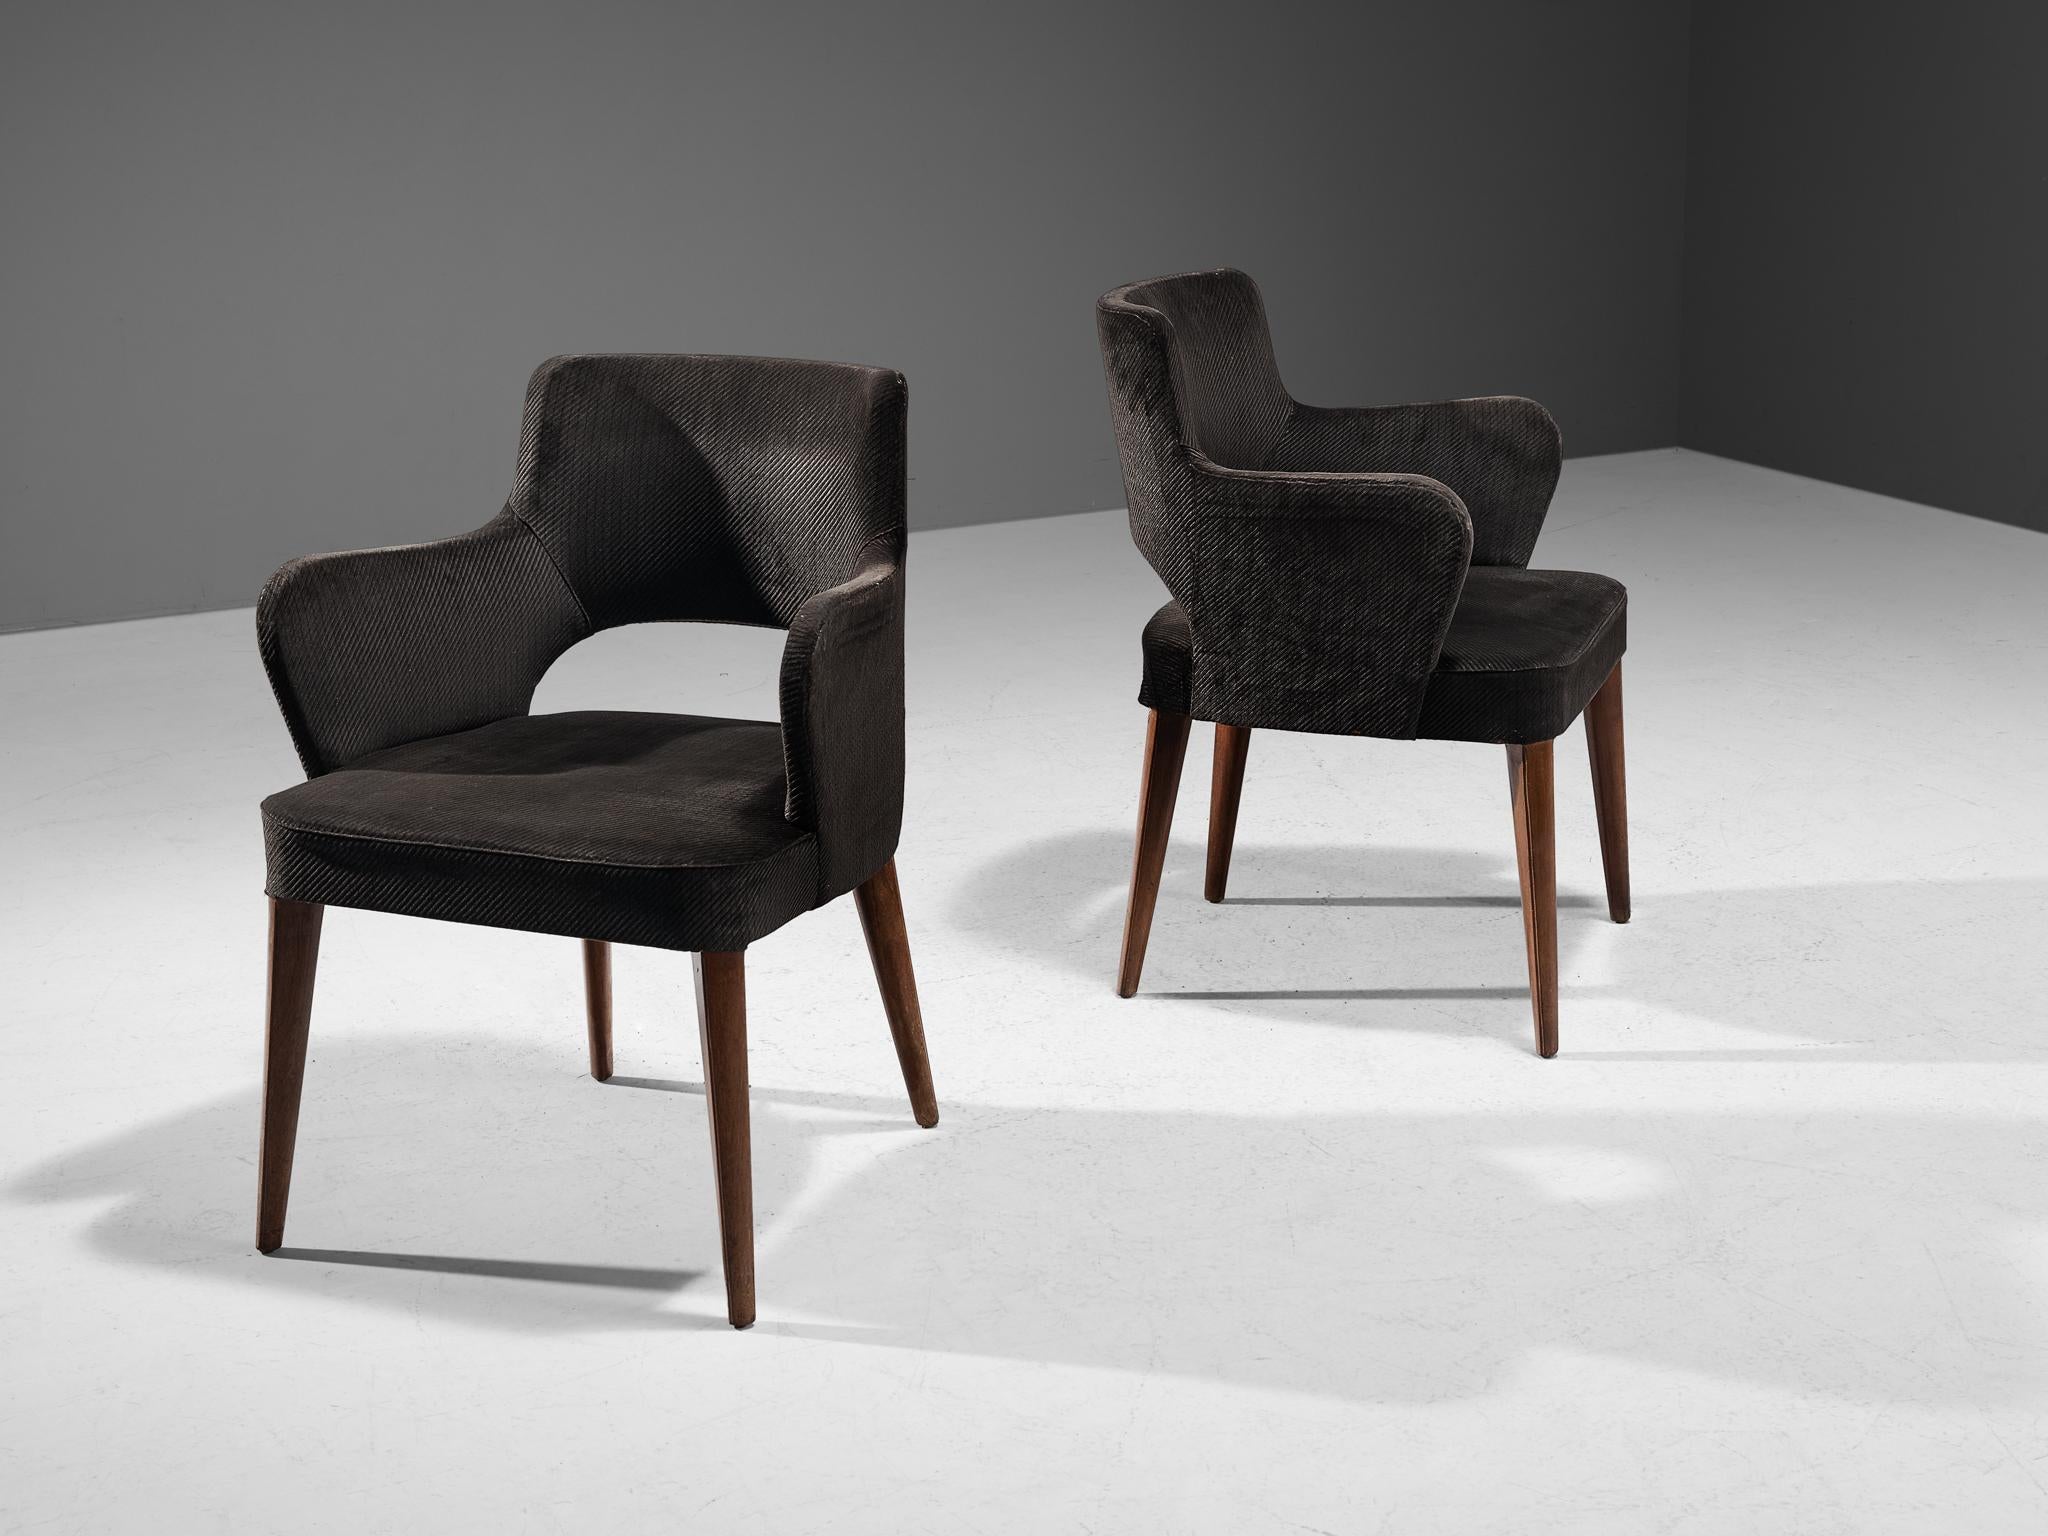 Paar Sessel, Stoff, gebeiztes Holz, Europa, 1970er Jahre 

Eine fließende, skulpturale Form A. Dieser organisch geformte Stuhl hat ein zeitloses und vielseitiges Design, das sich nahtlos in Arbeits-, Konferenz-, Lounge- und Esszimmeranwendungen